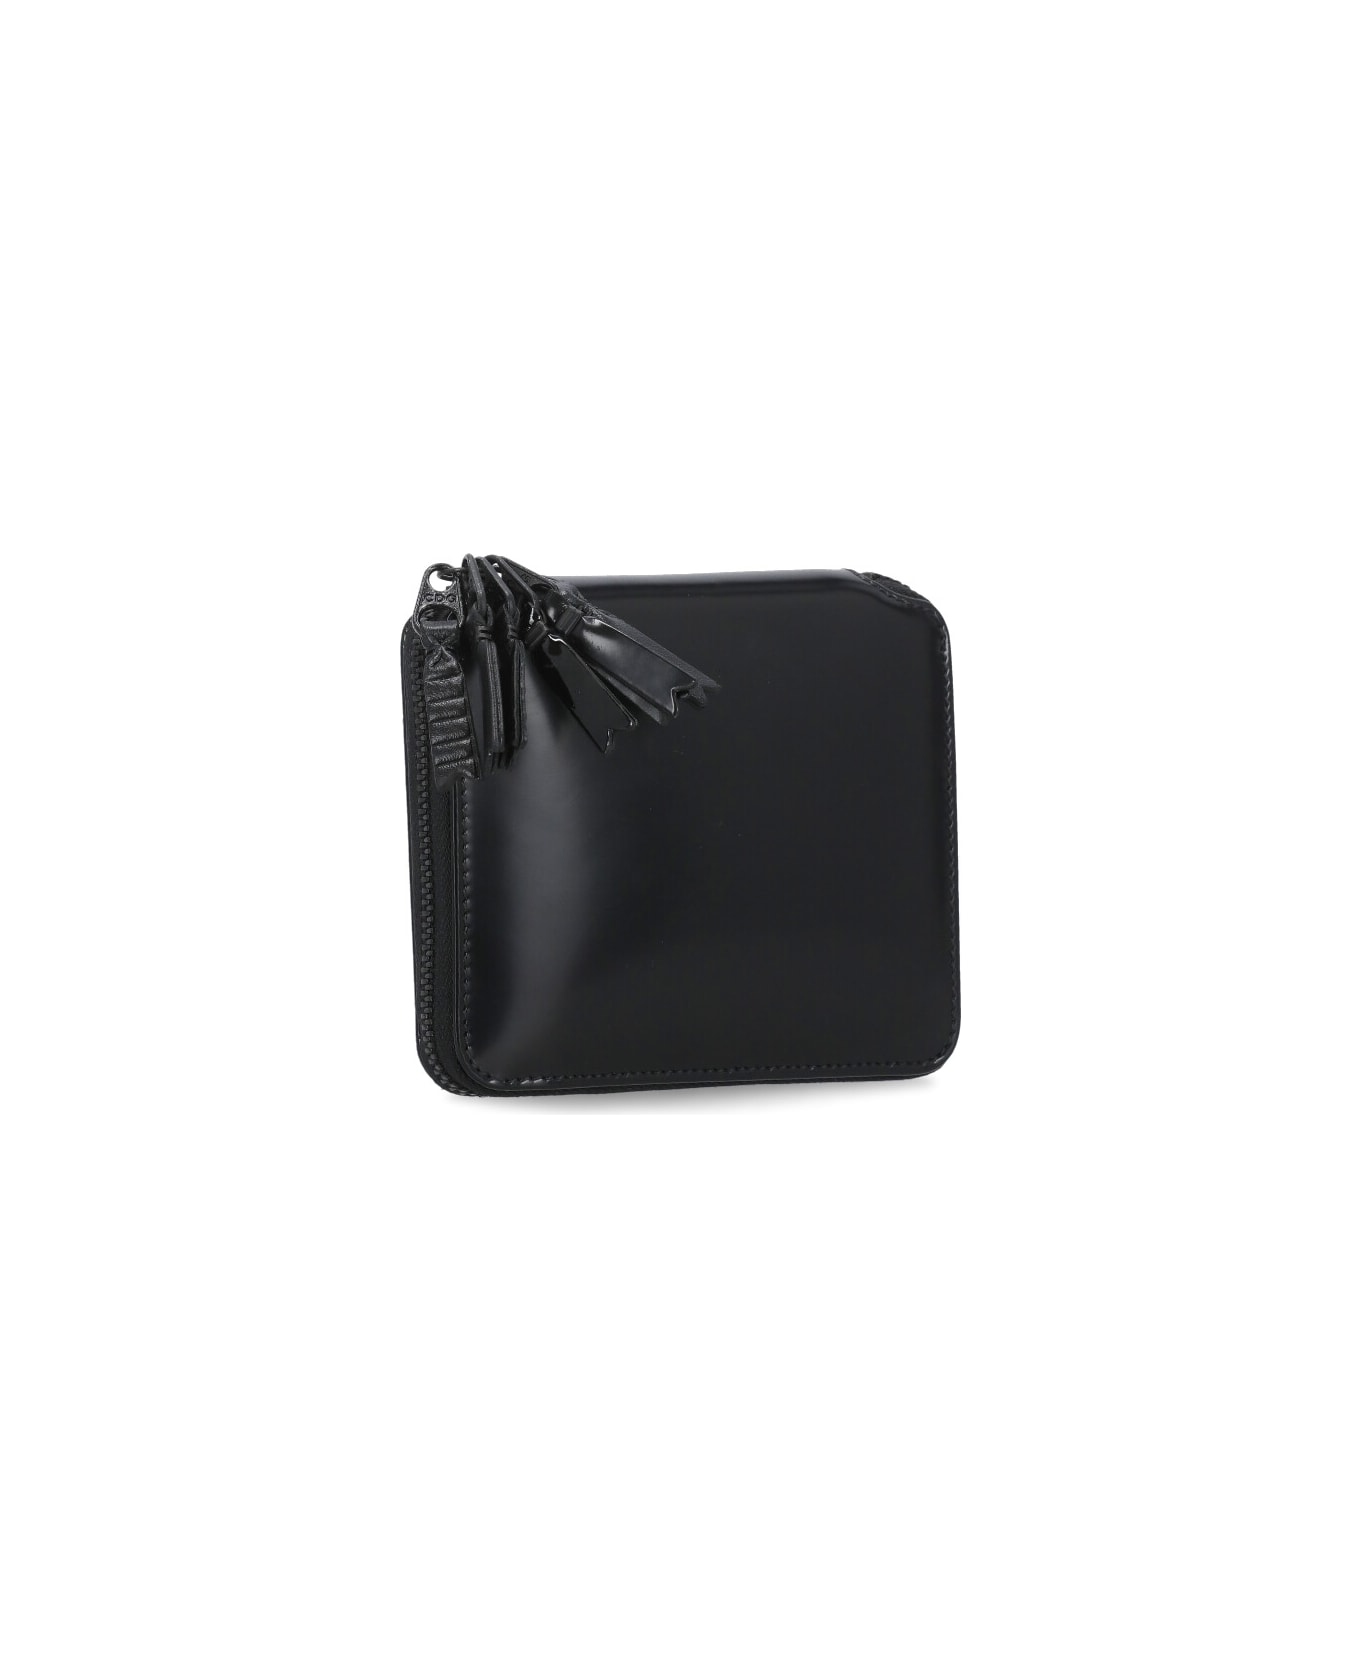 Comme des Garçons Wallet Leather Wallet - Black 財布